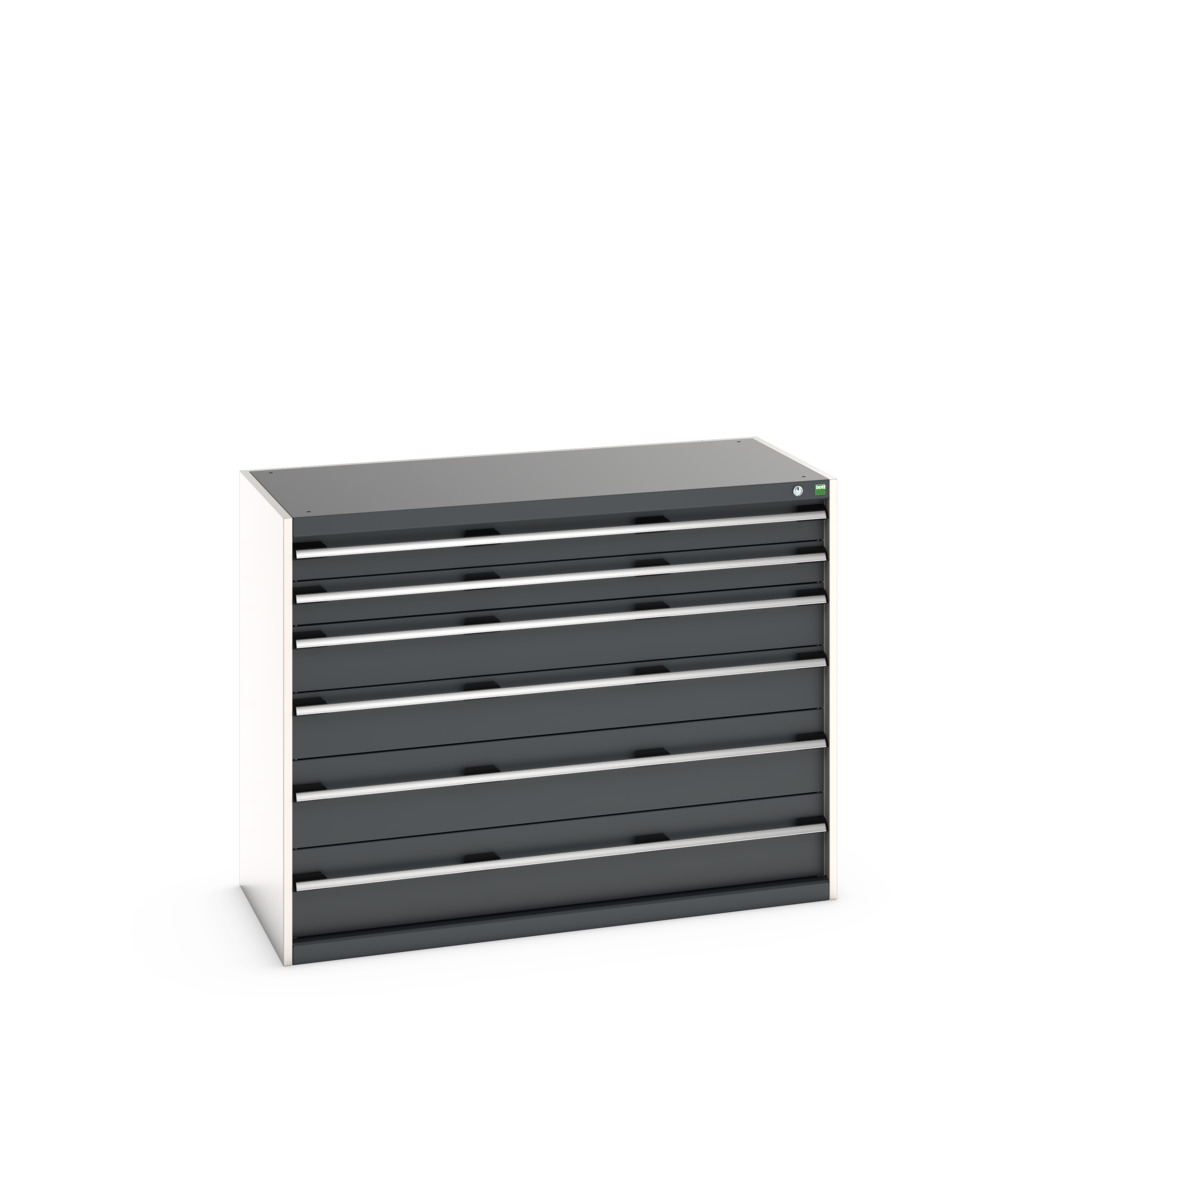 40022123.19V - cubio drawer cabinet